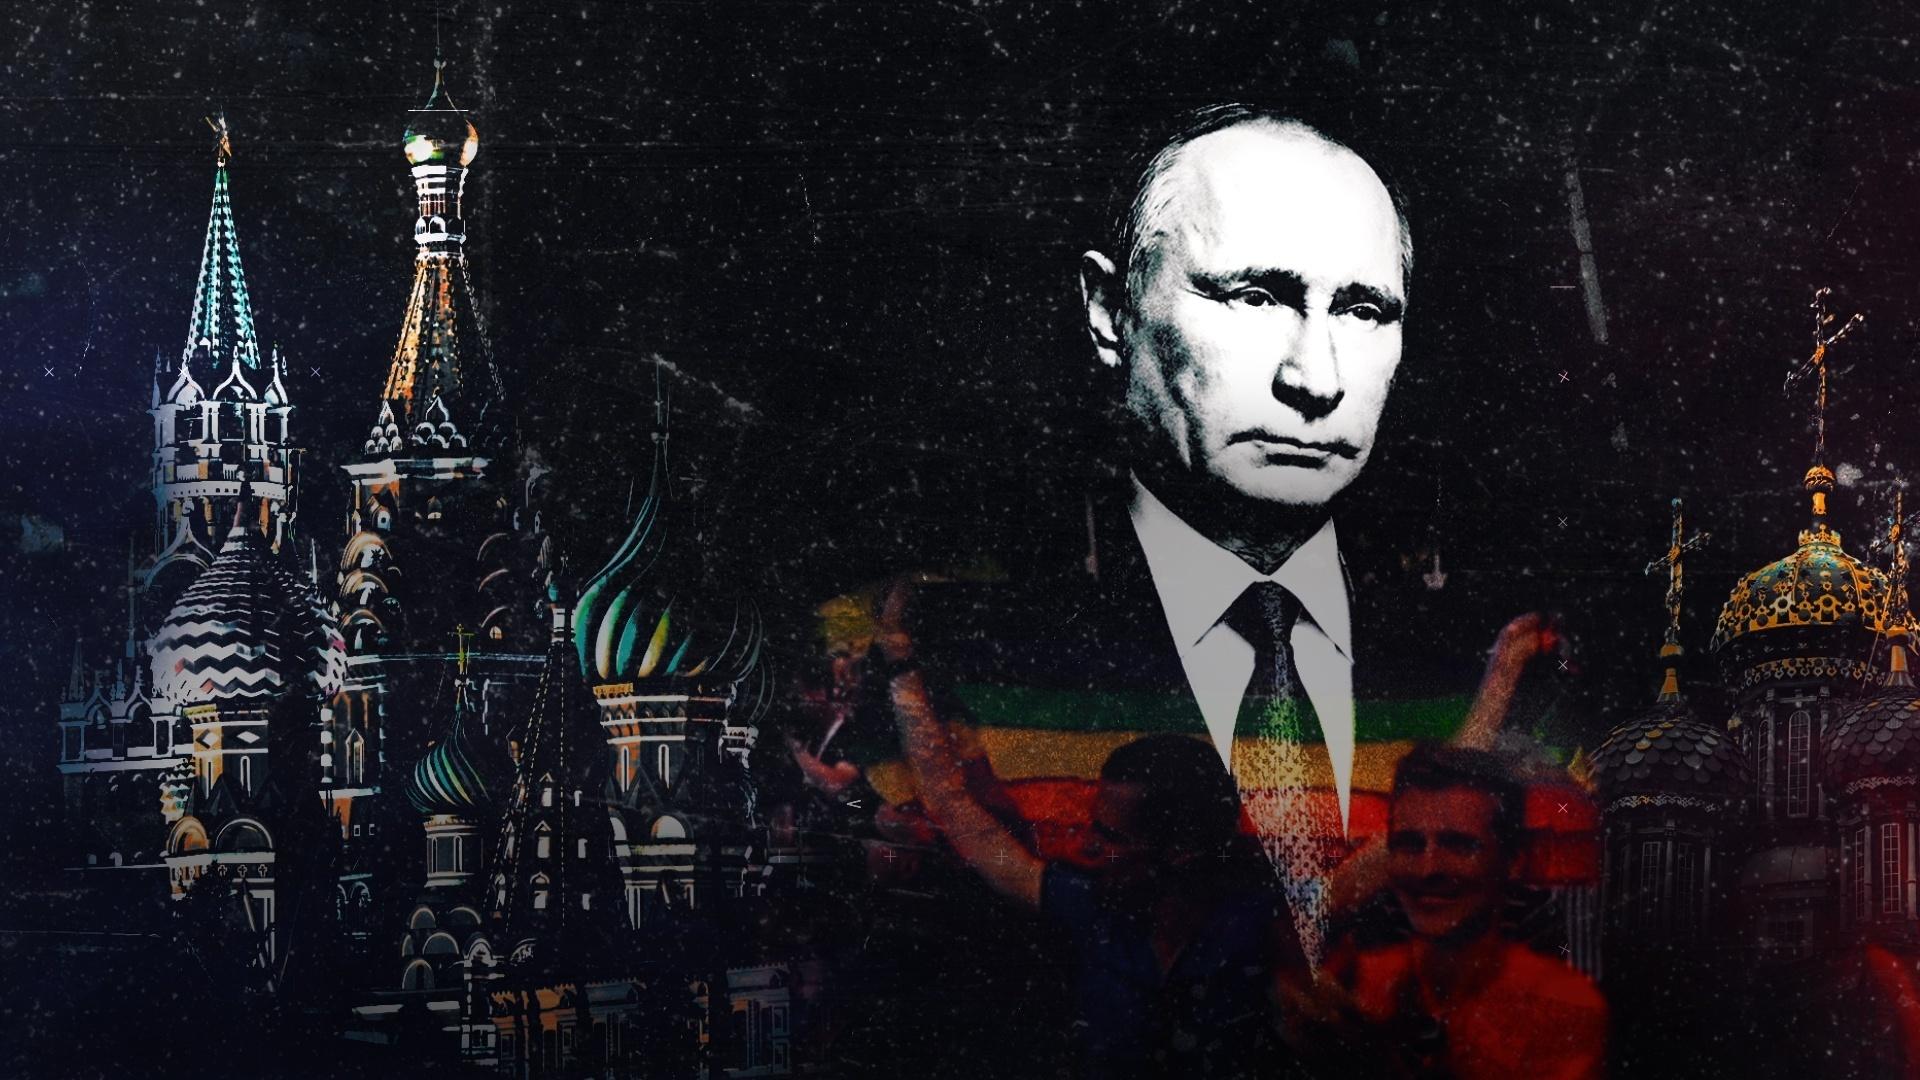 Minidocumentário Do Outro Lado mostra como é ser LGBT na Rússia